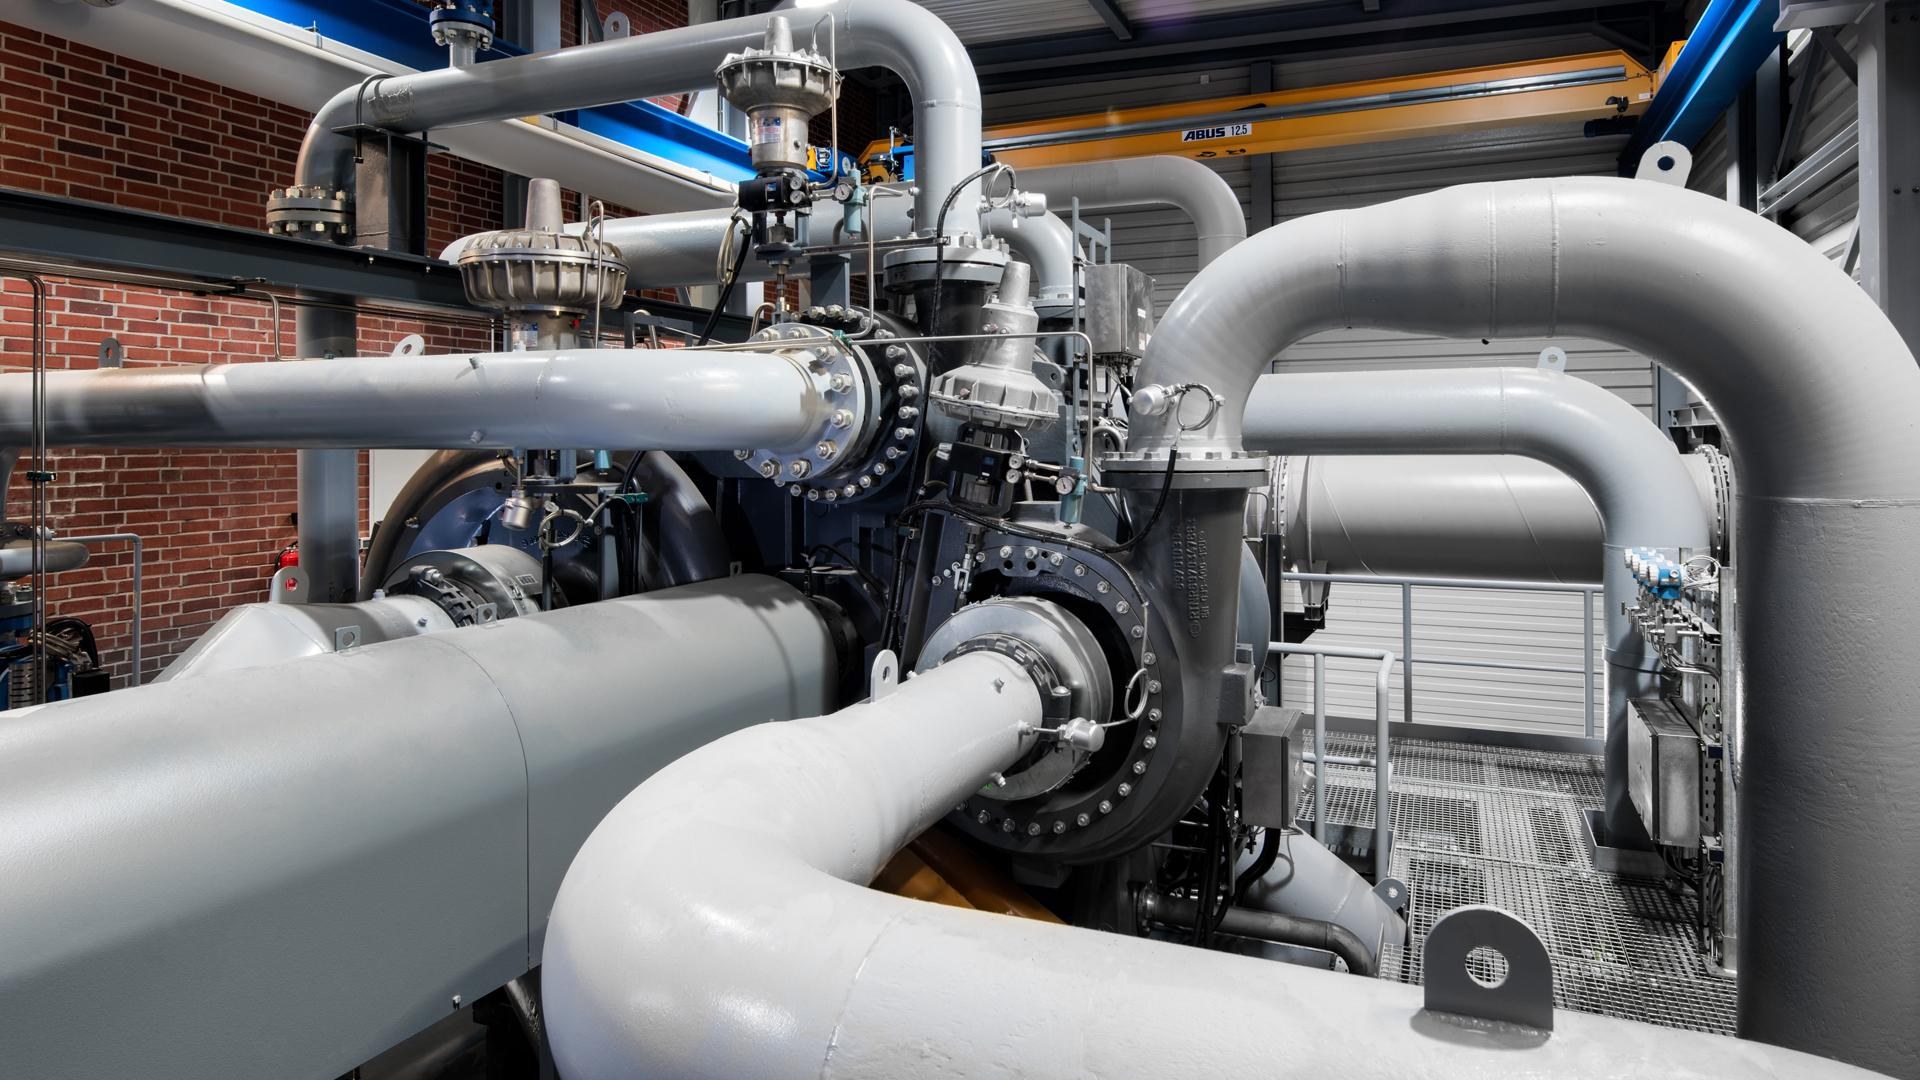 High-pressure air compressor system (25 kilograms per second; 45 bar; 12.5 megawatts)